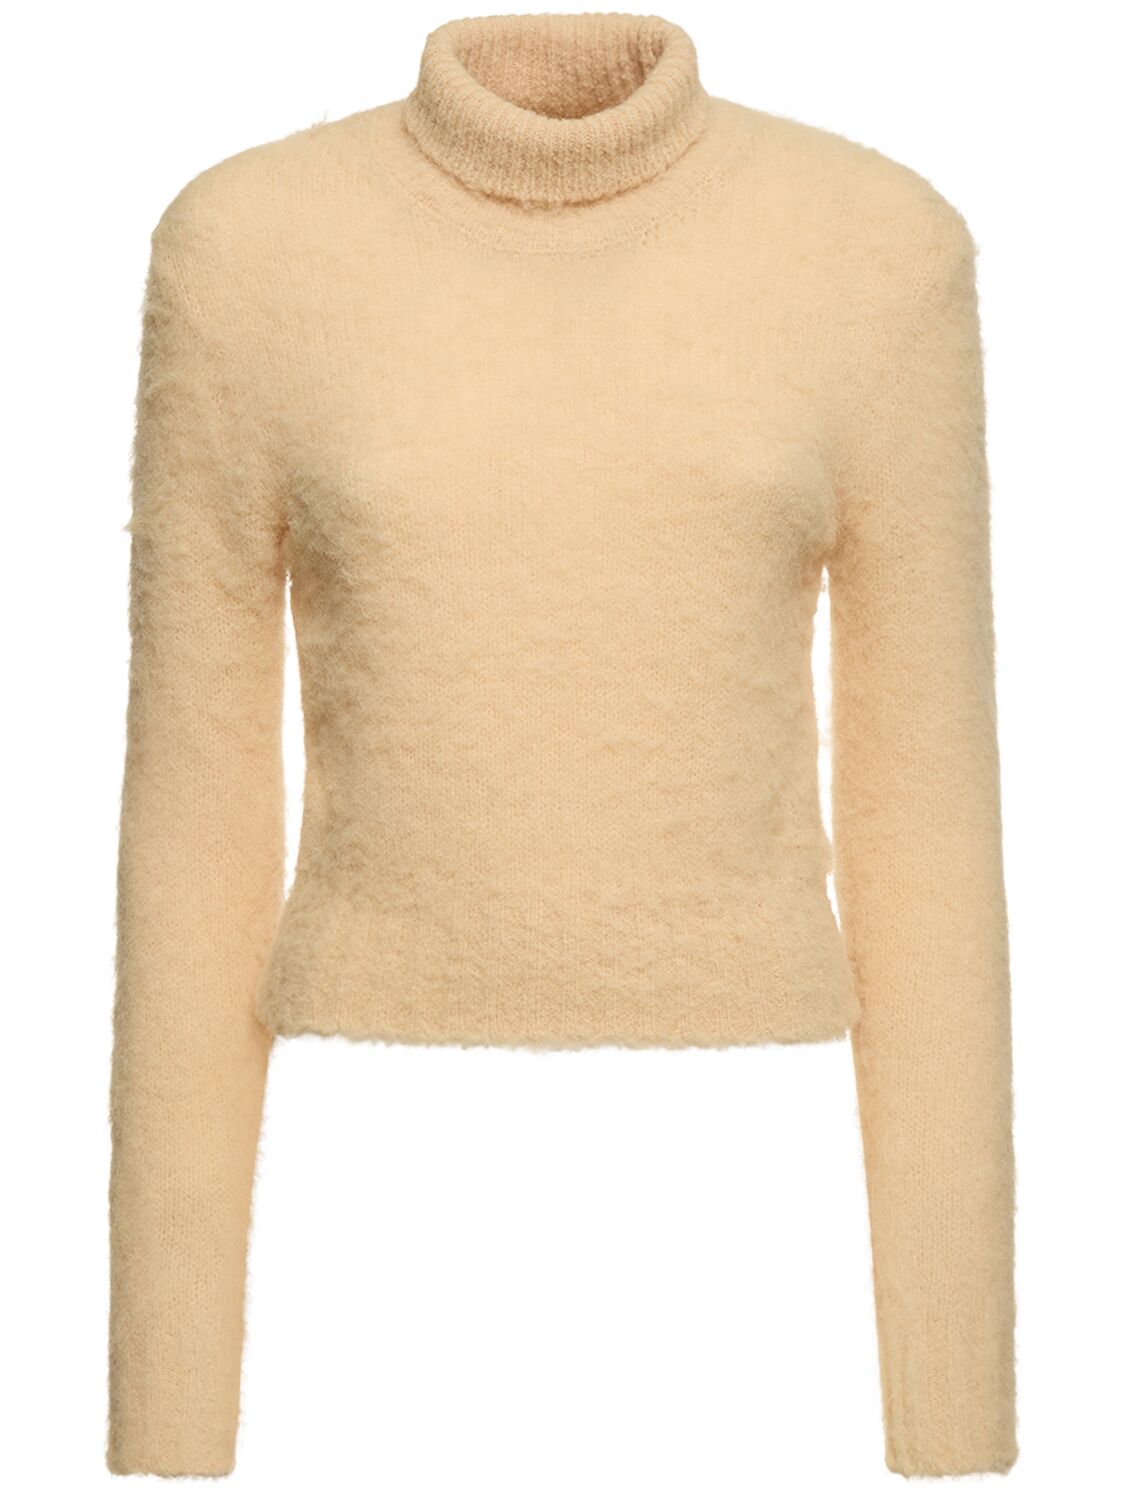 Ami Alexandre Mattiussi Brushed Alpaca Blend Turtleneck Sweater In Cream